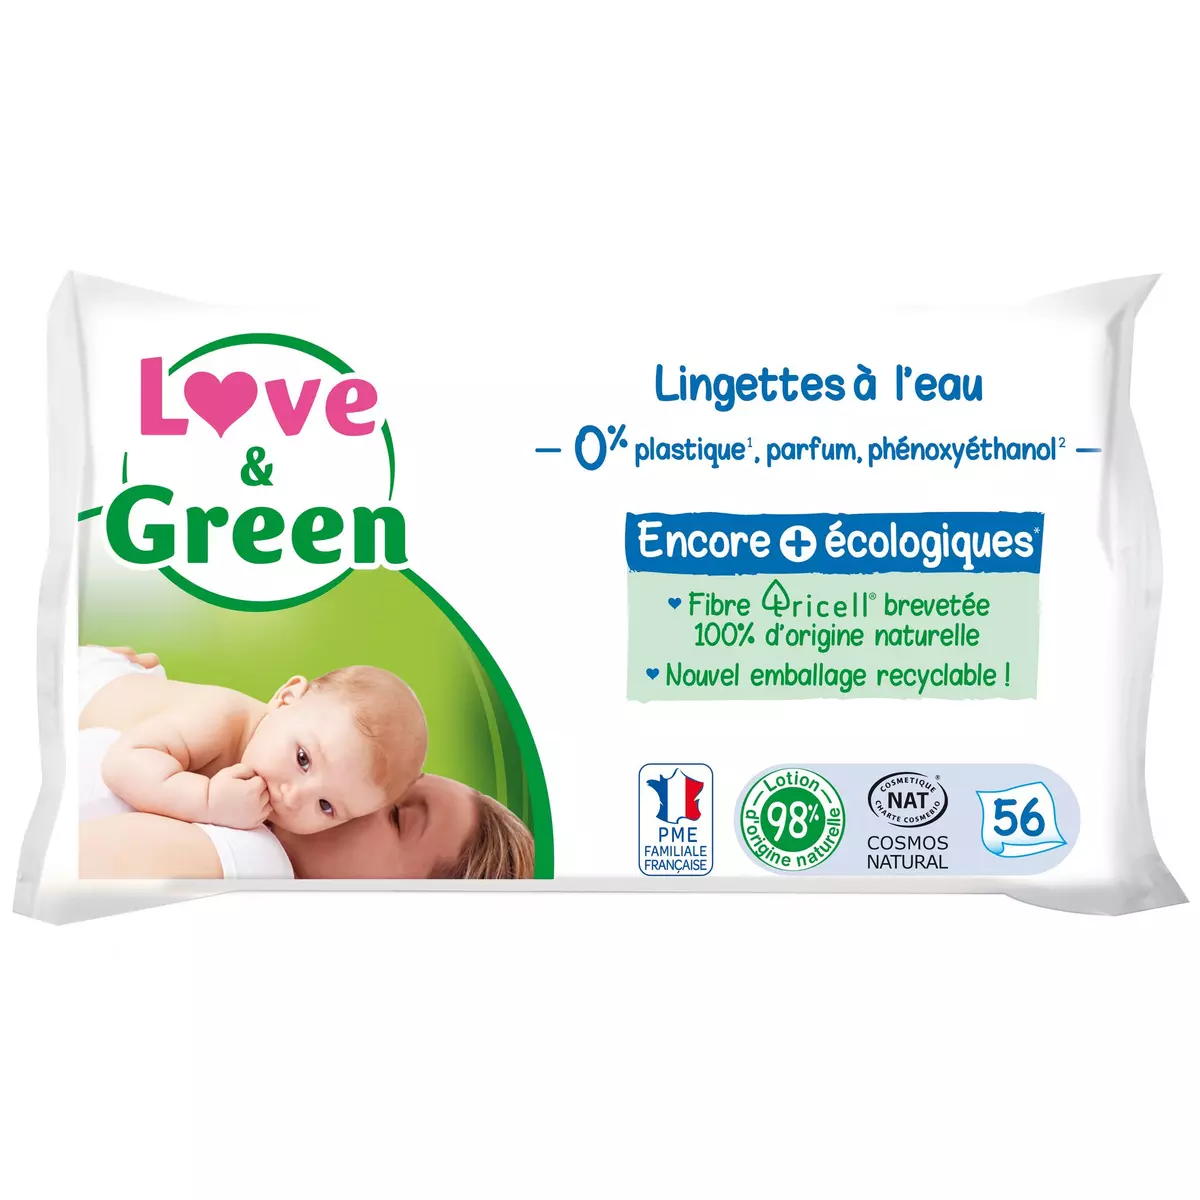 LOVE & GREEN Lingettes nettoyantes à l'eau pour bébé 56 lingettes pas cher  